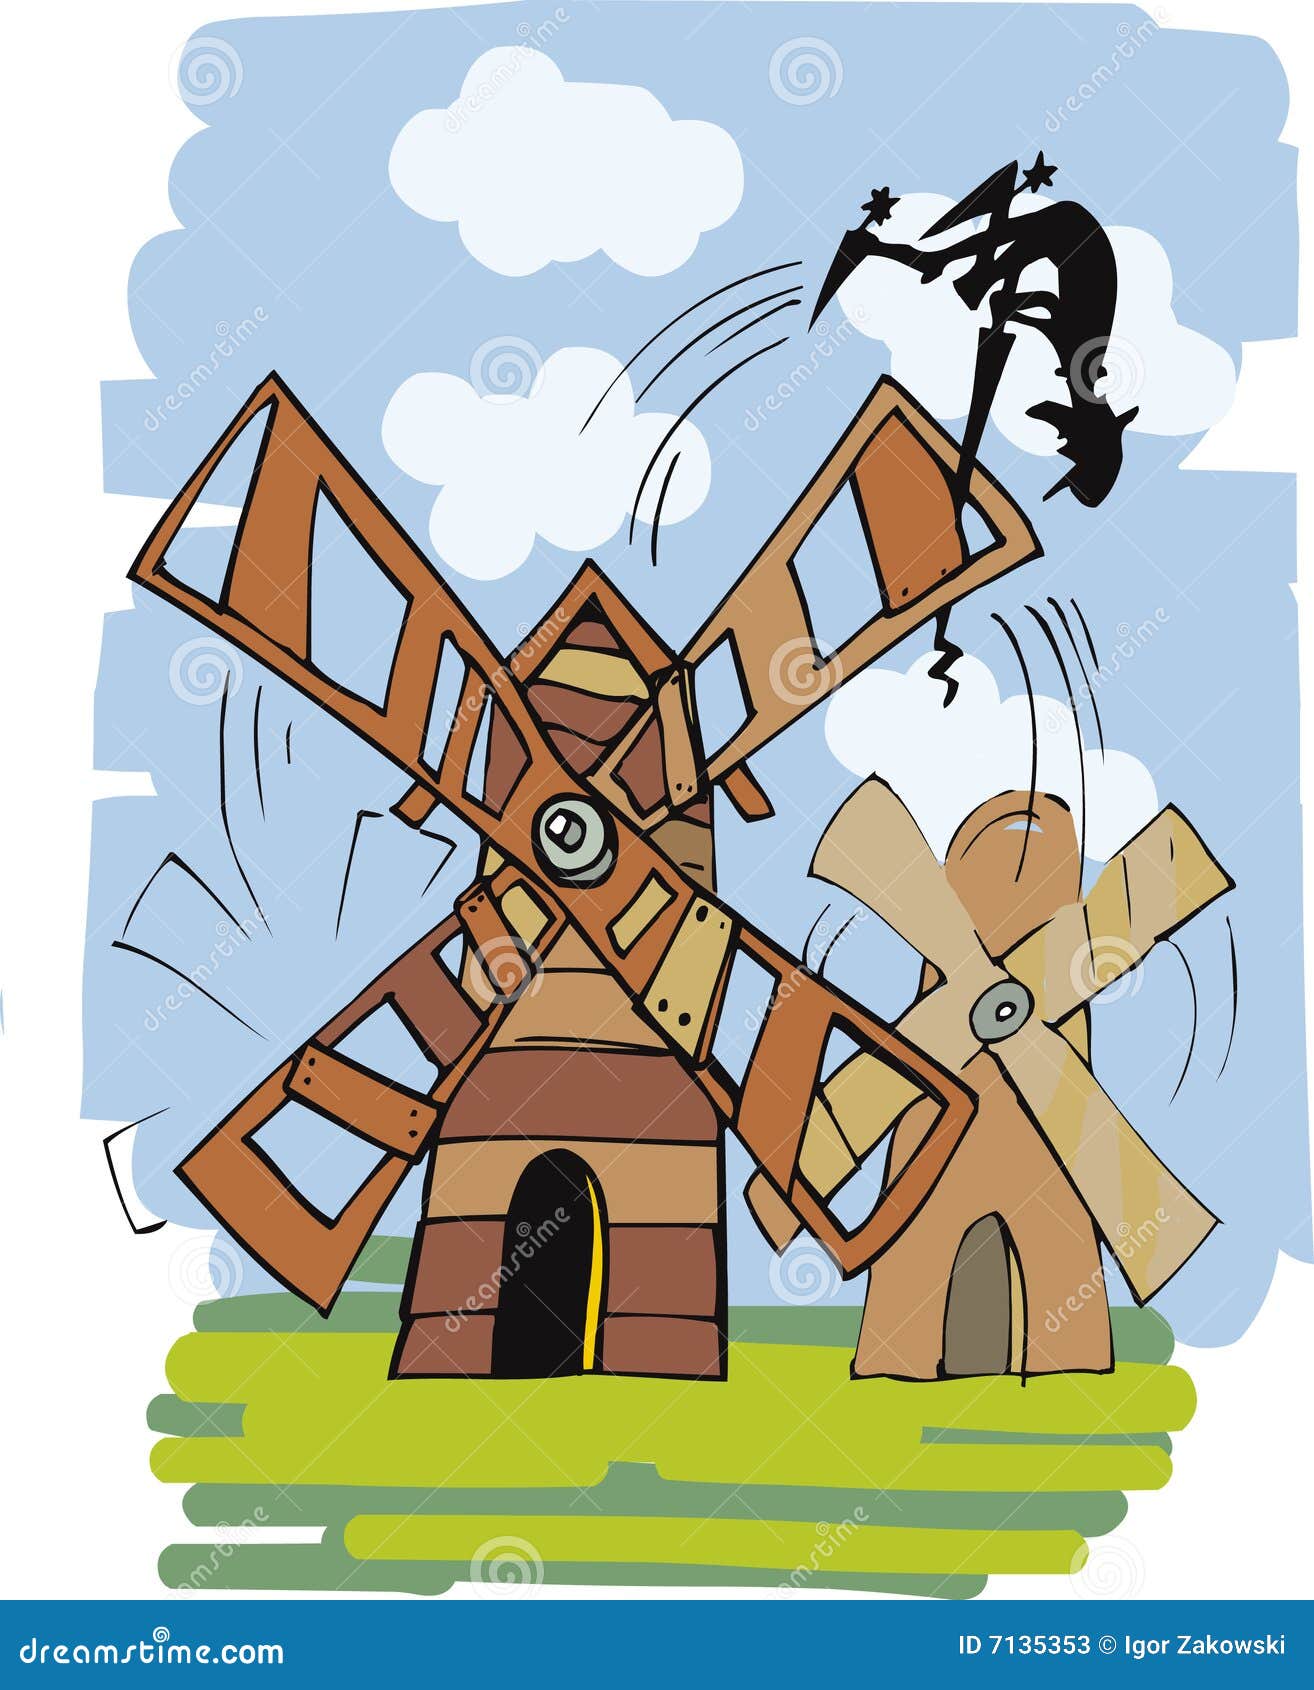 don quixote and windmill